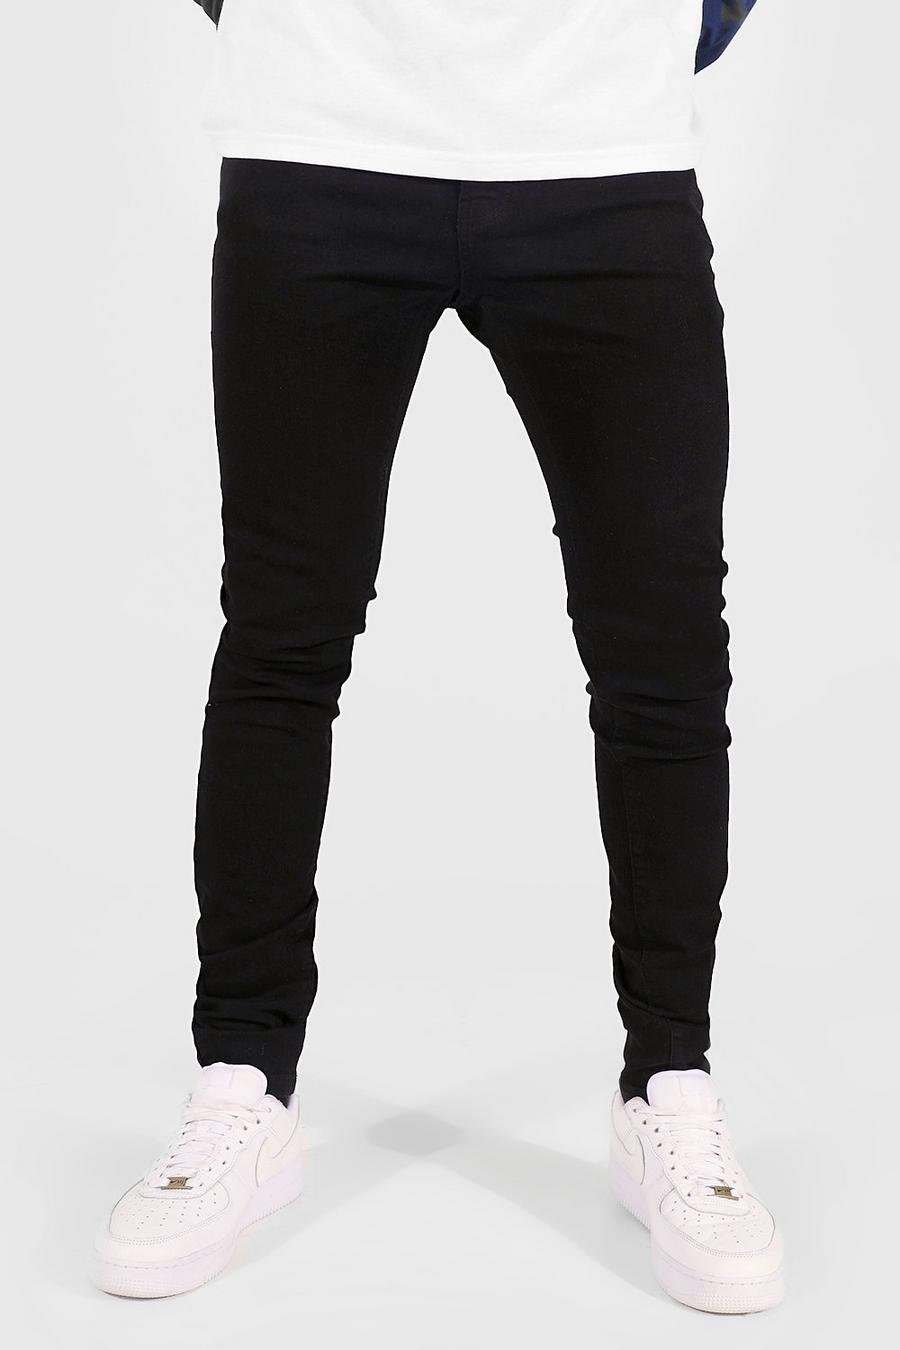 שחור nero סקיני ג'ינס לנשים גבוהות